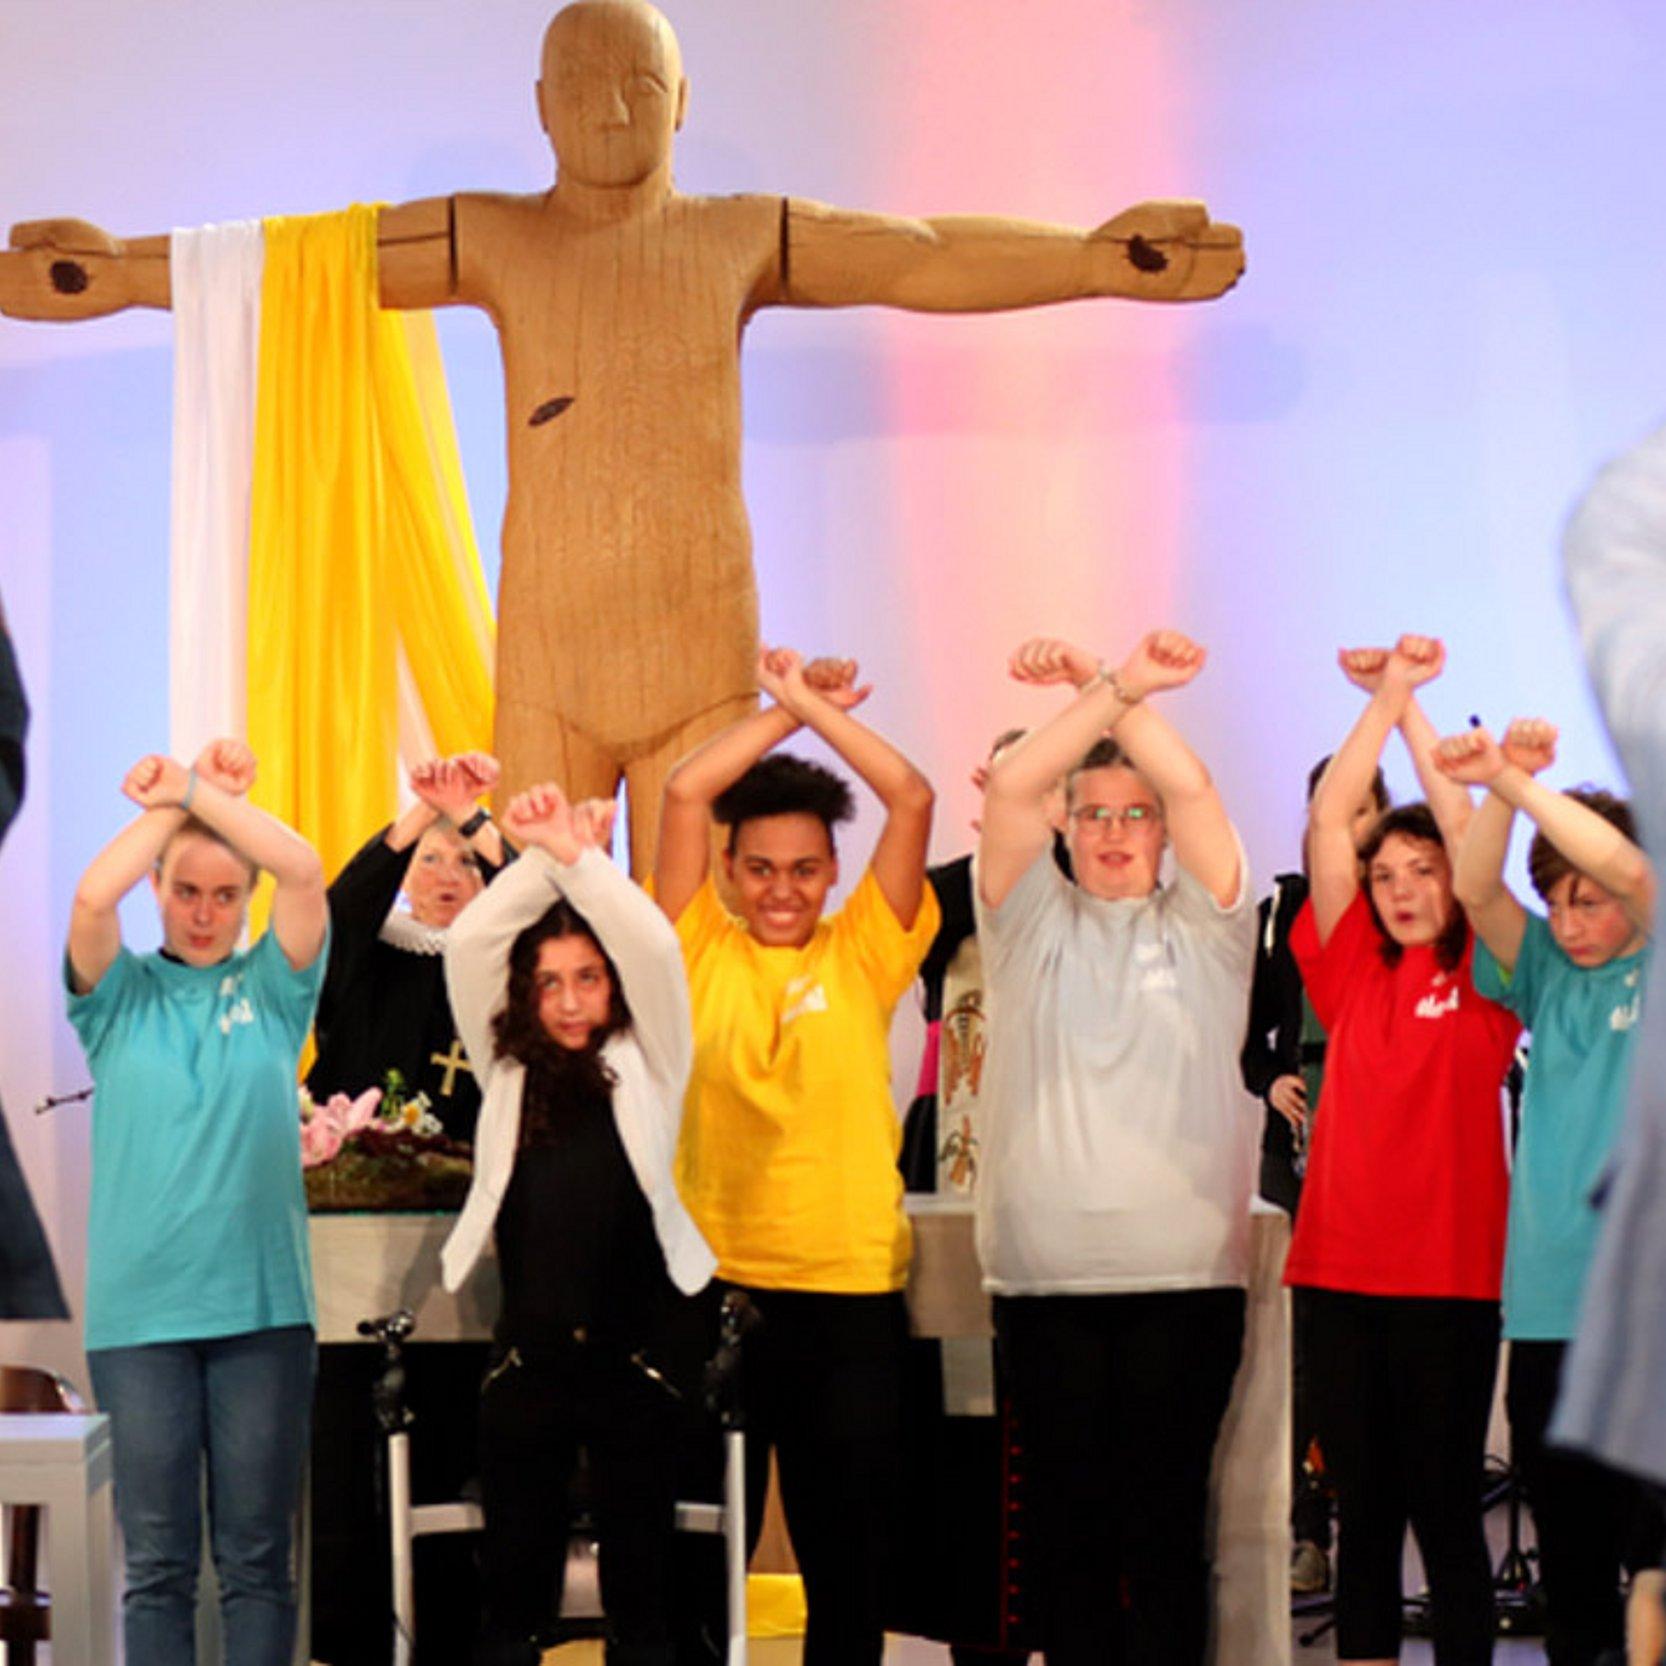 Junge Leute heben die Arme in die Höhe, dahinter eine große, hölzerne Jeusus-Statue